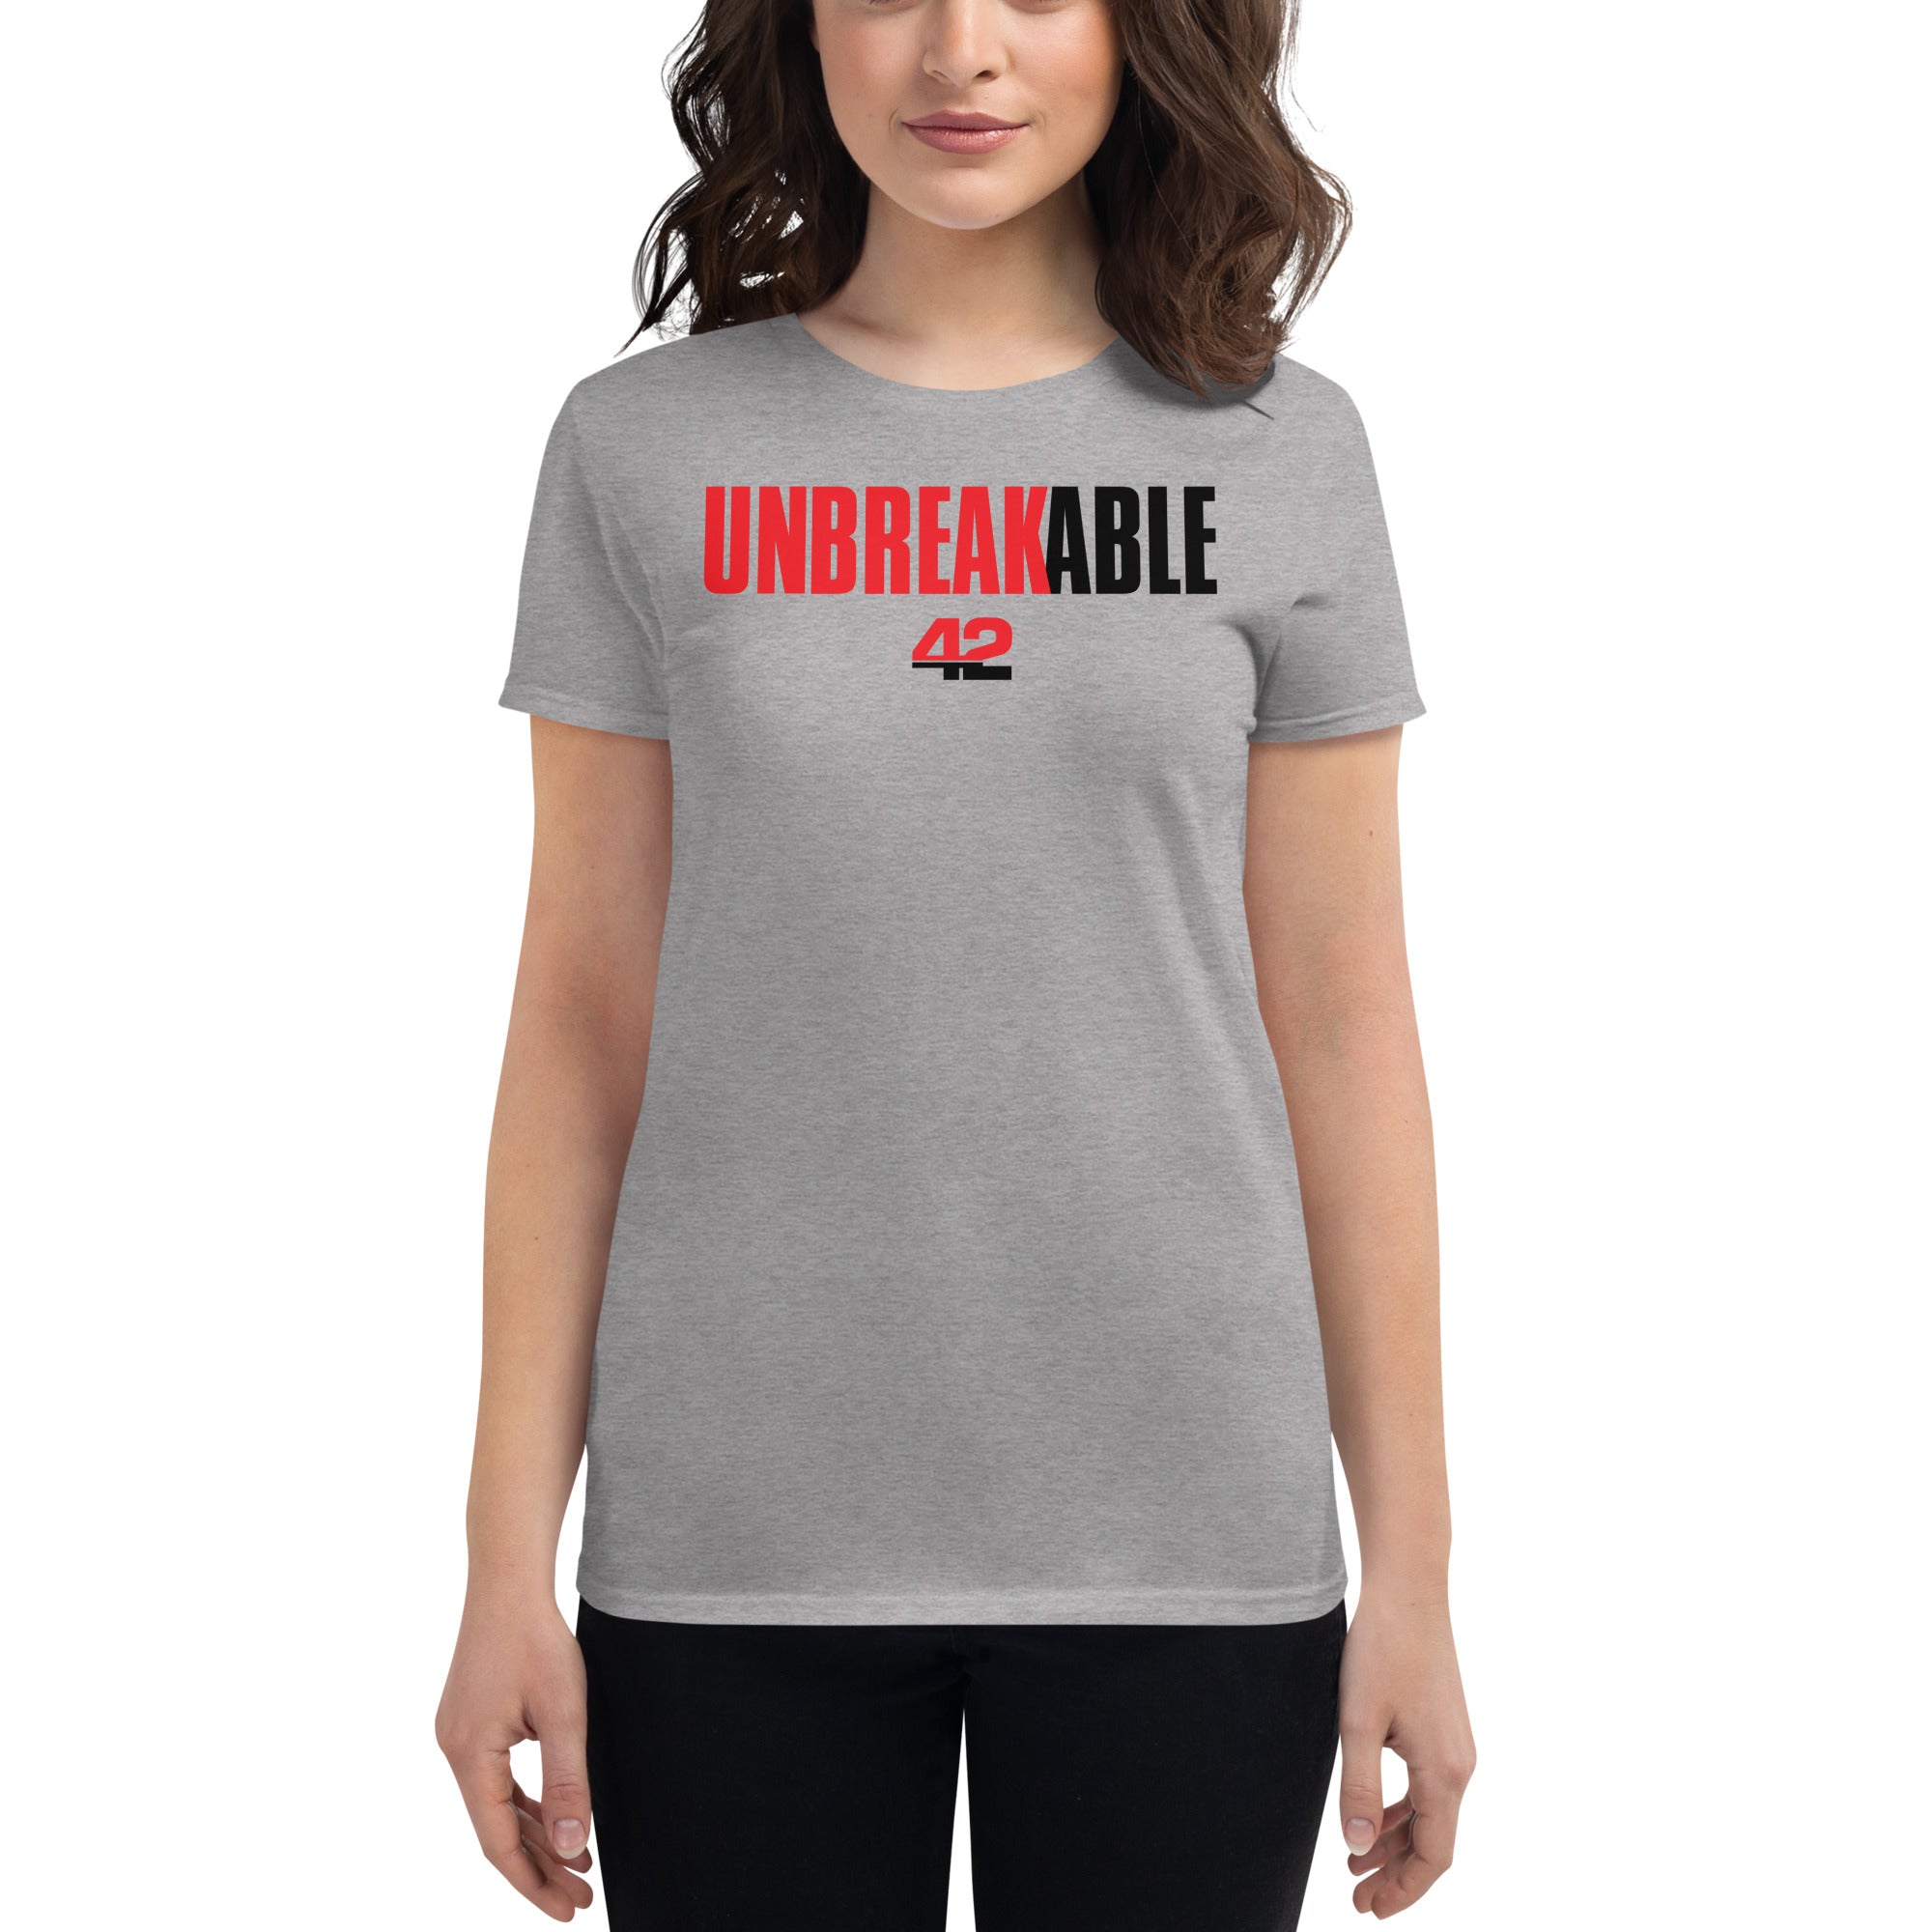 Unbreakable Women's short sleeve t-shirt